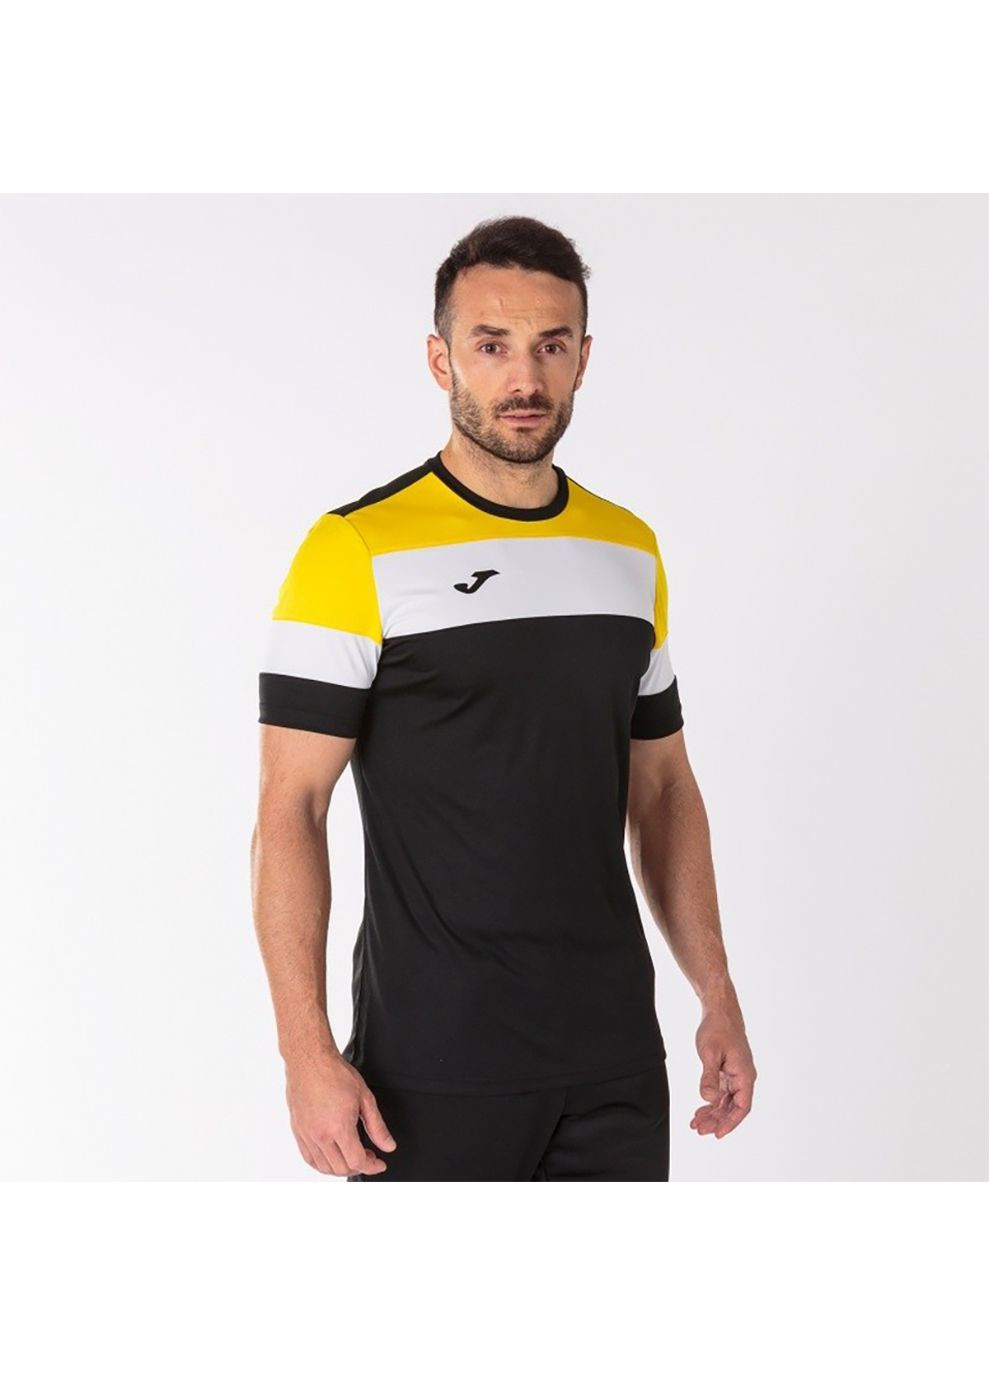 Комбінована футболка crew iv t-shirt black-yellow s/s чорний,жовтий 101534.109 Joma